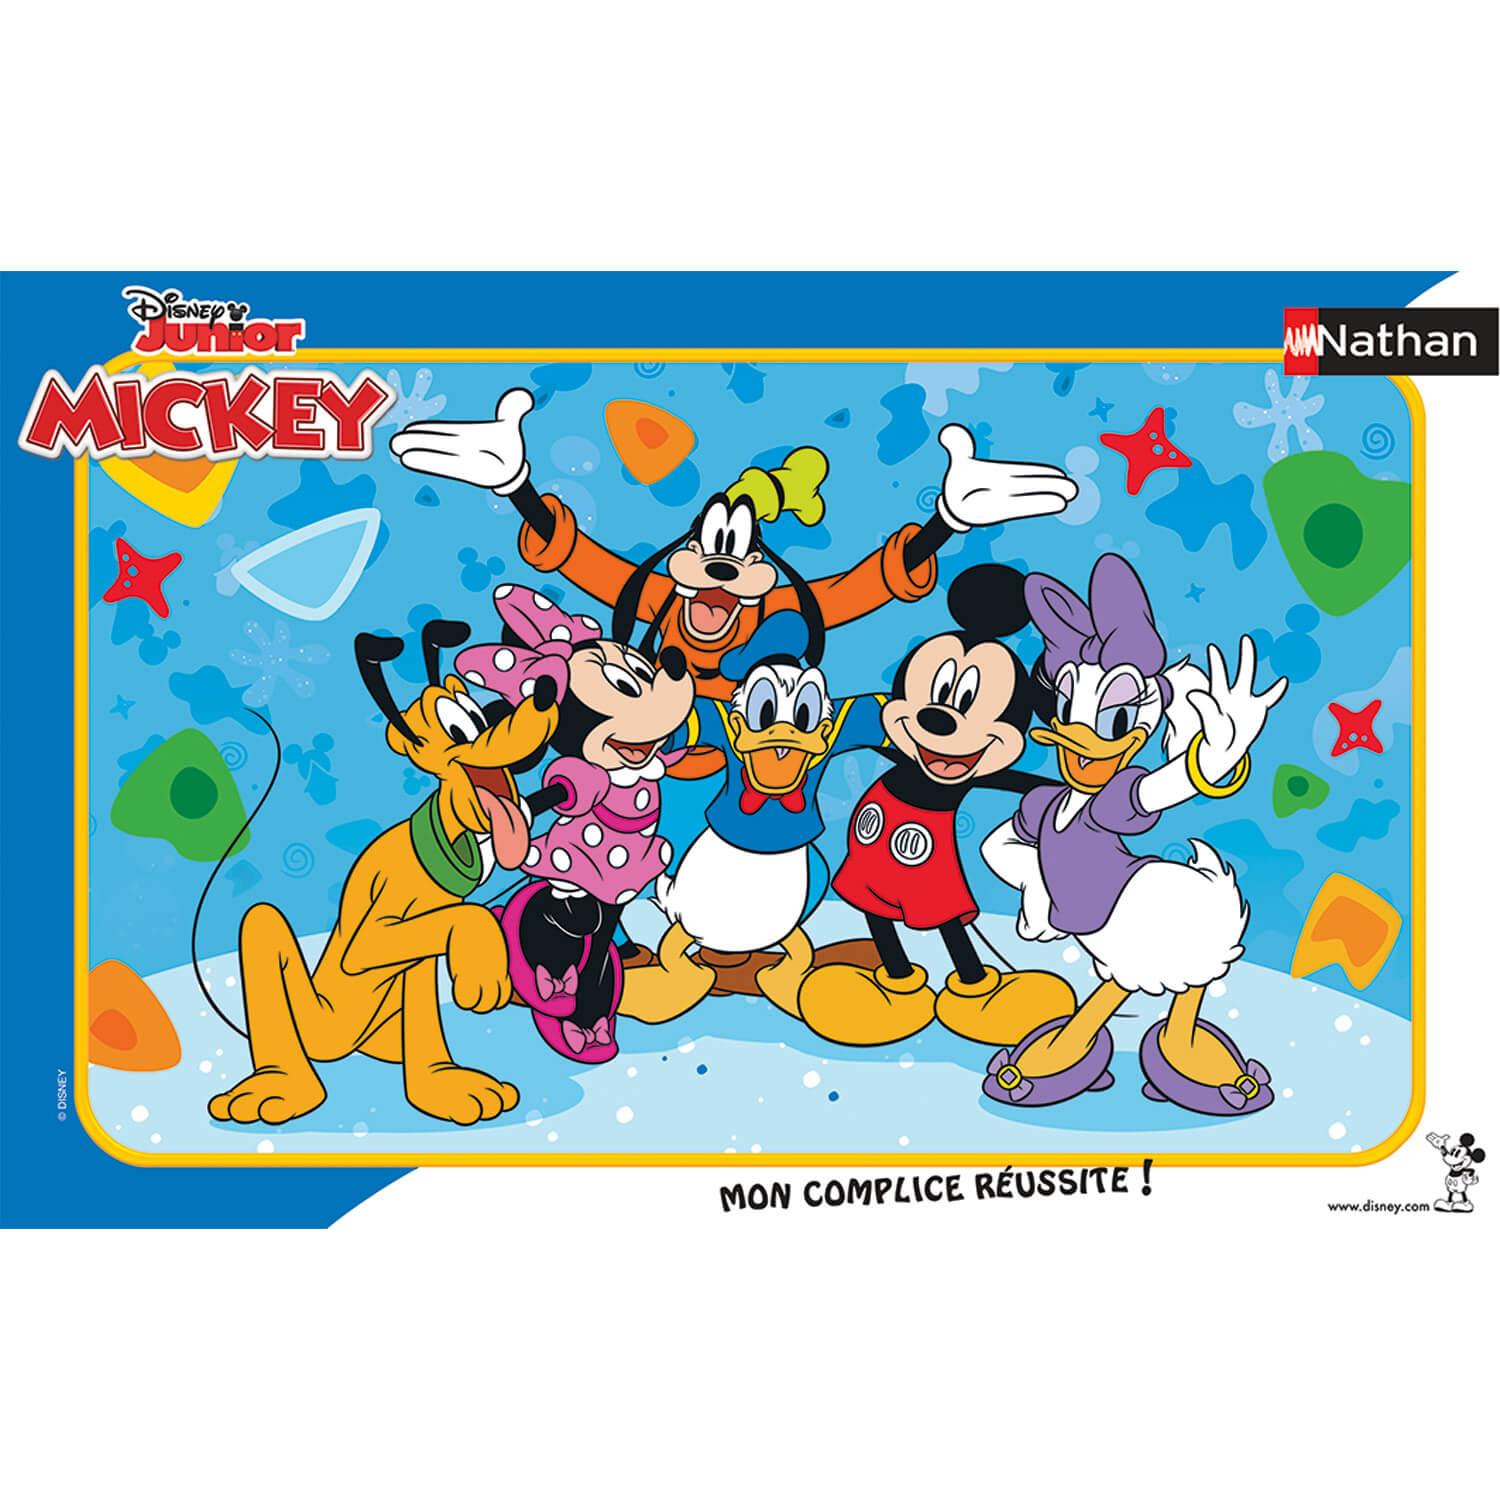 Ravensburger Puzzle cadre 15 pièces - Minnie et Figaro / Disney 